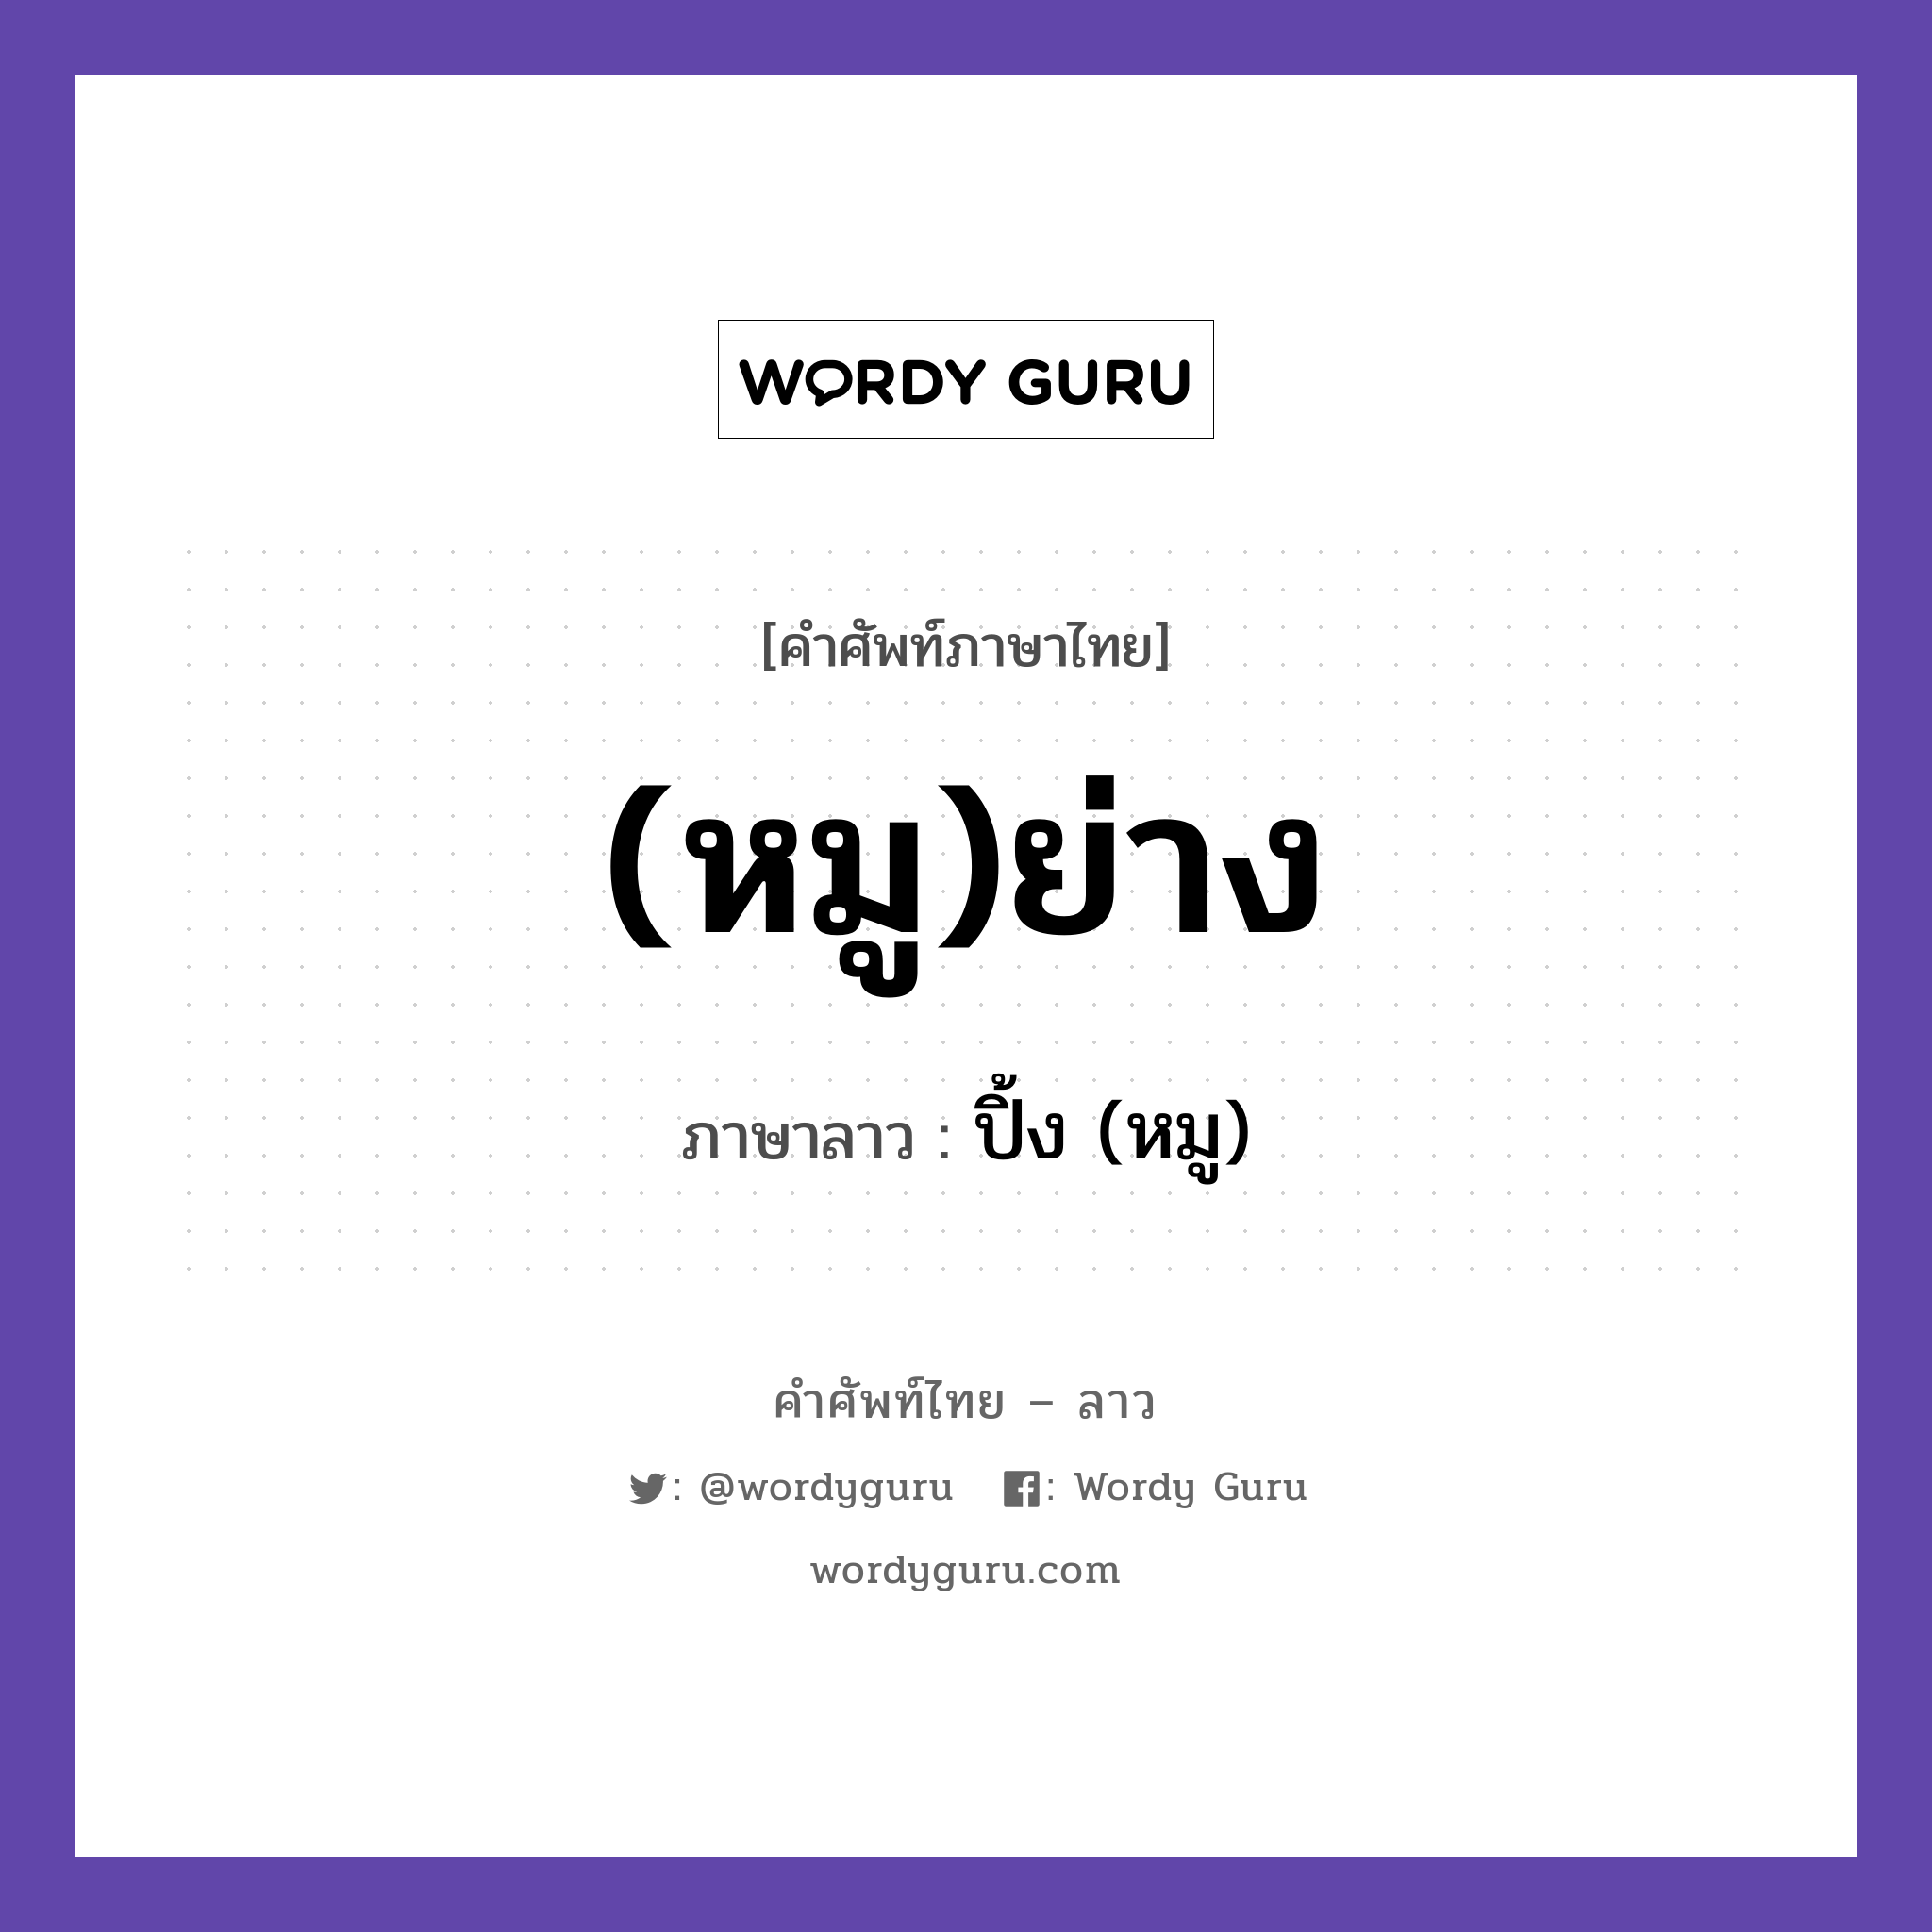 (หมู)ย่าง ภาษาลาวคืออะไร, คำศัพท์ภาษาไทย - ลาว (หมู)ย่าง ภาษาลาว ปิ้ง (หมู) หมวด อาหาร หมวด อาหาร